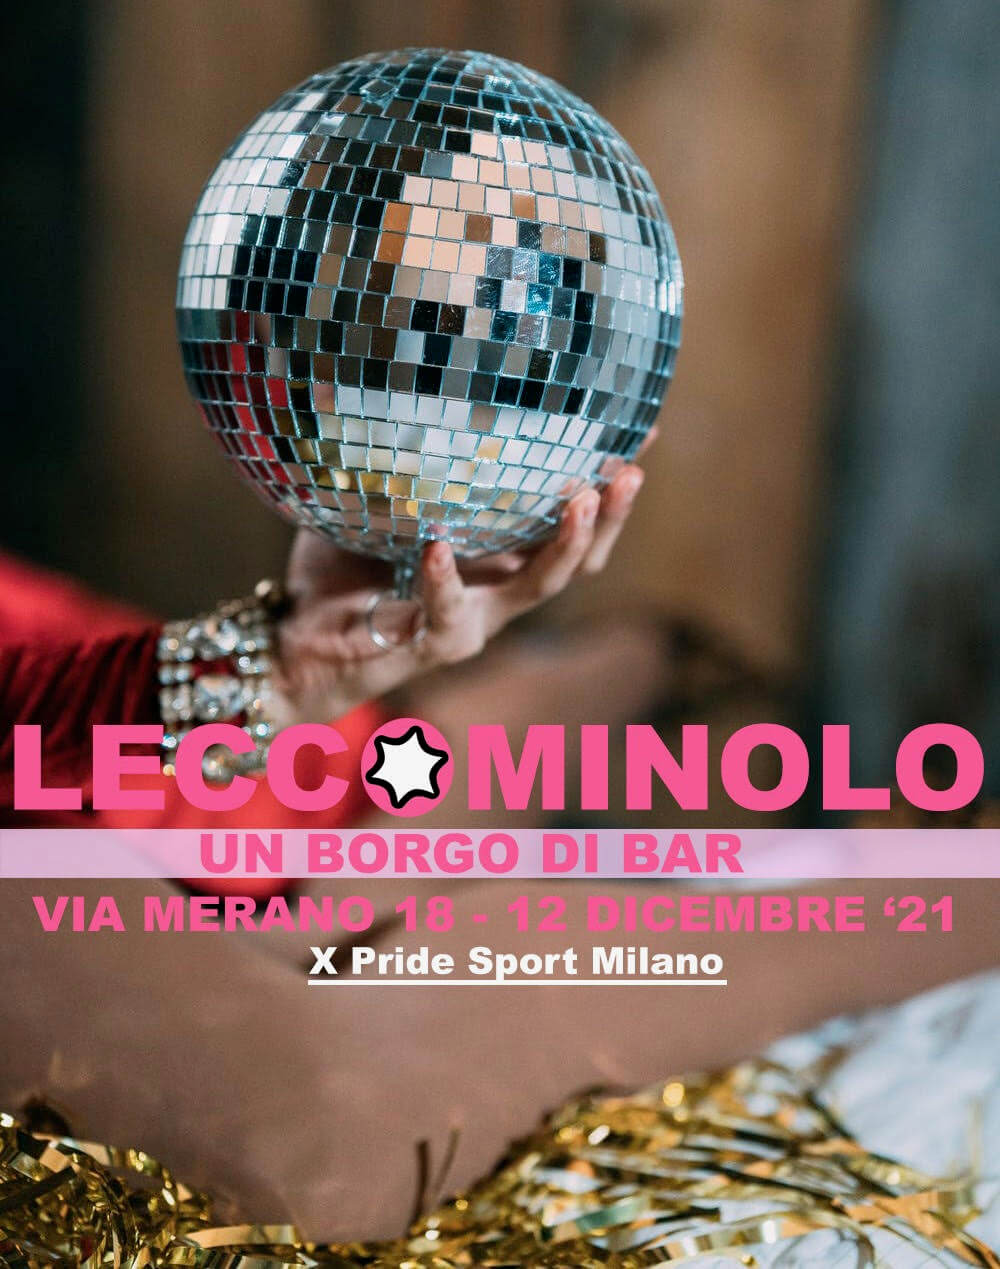 LeccoMilano trasloca a Nolo di domenica tra aperitivi, musica e sport - Leccominolo 3 - Gay.it